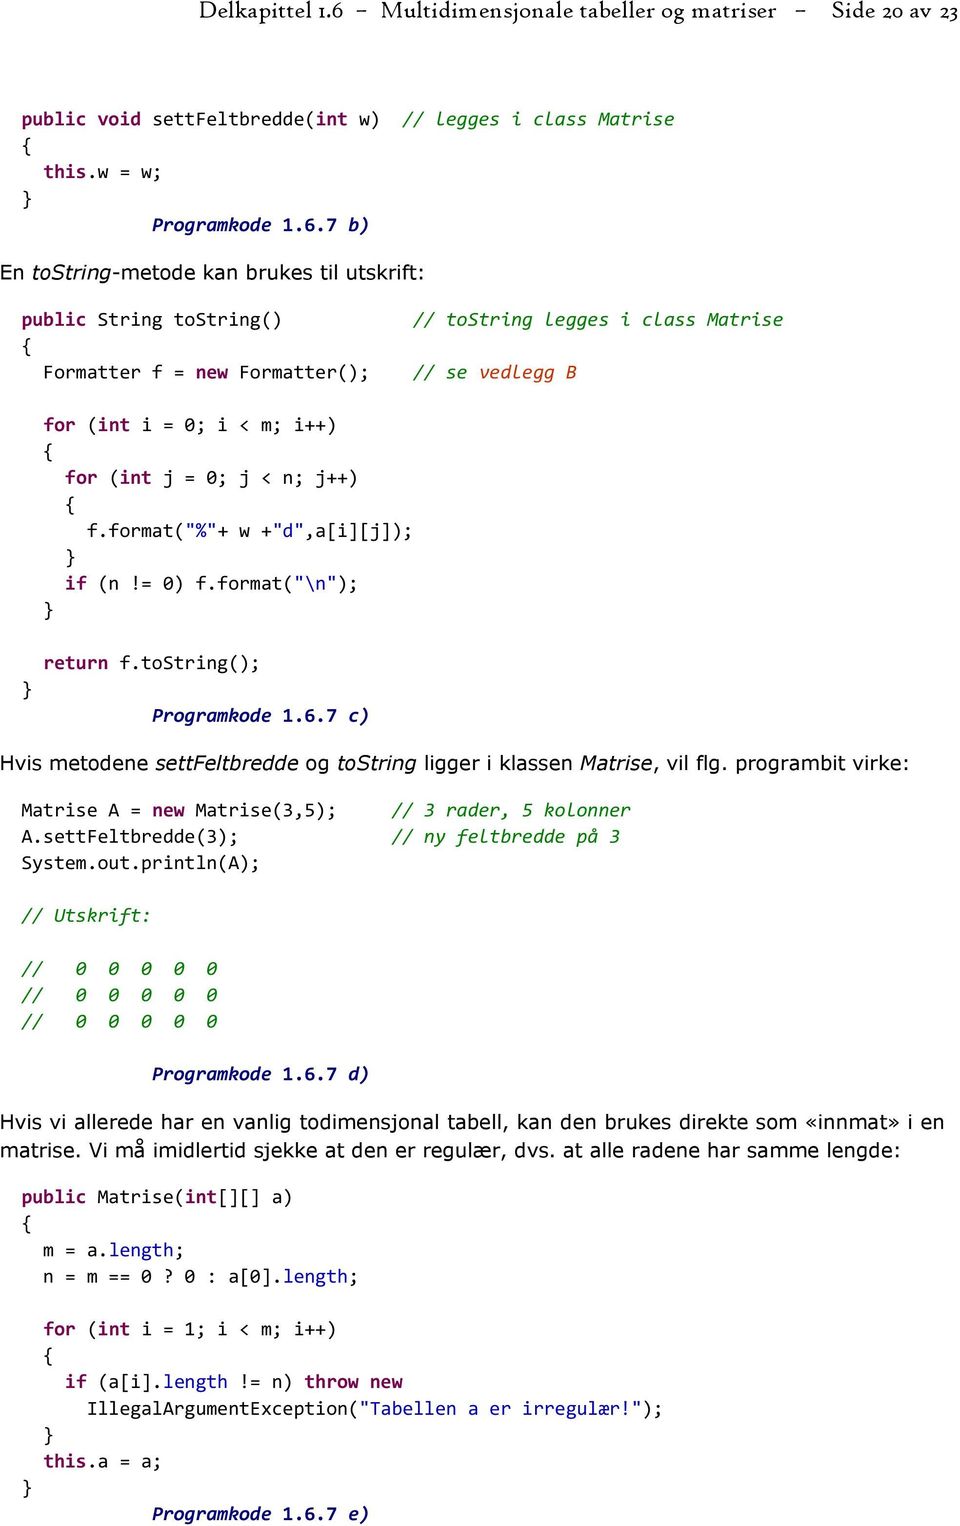 7 b) En tostring-metode kan brukes til utskrift: public String tostring() Formatter f = new Formatter(); // tostring legges i class Matrise // se vedlegg B for (int i = 0; i < m; i++) for (int j = 0;